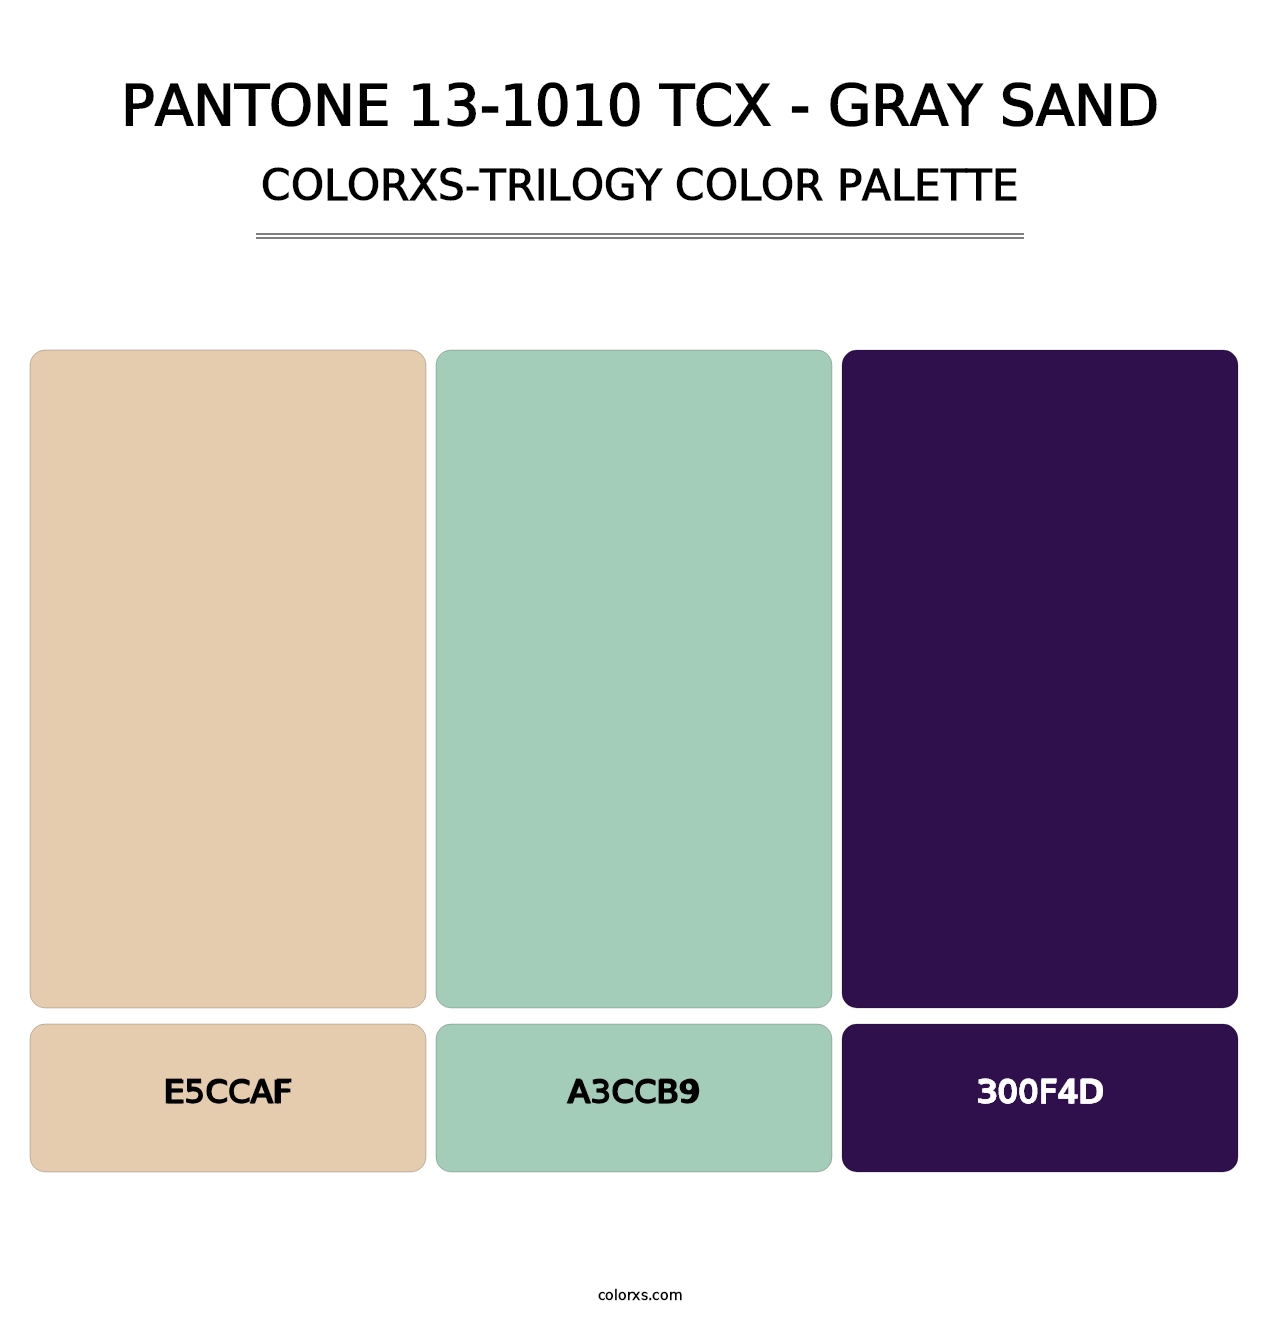 PANTONE 13-1010 TCX - Gray Sand - Colorxs Trilogy Palette